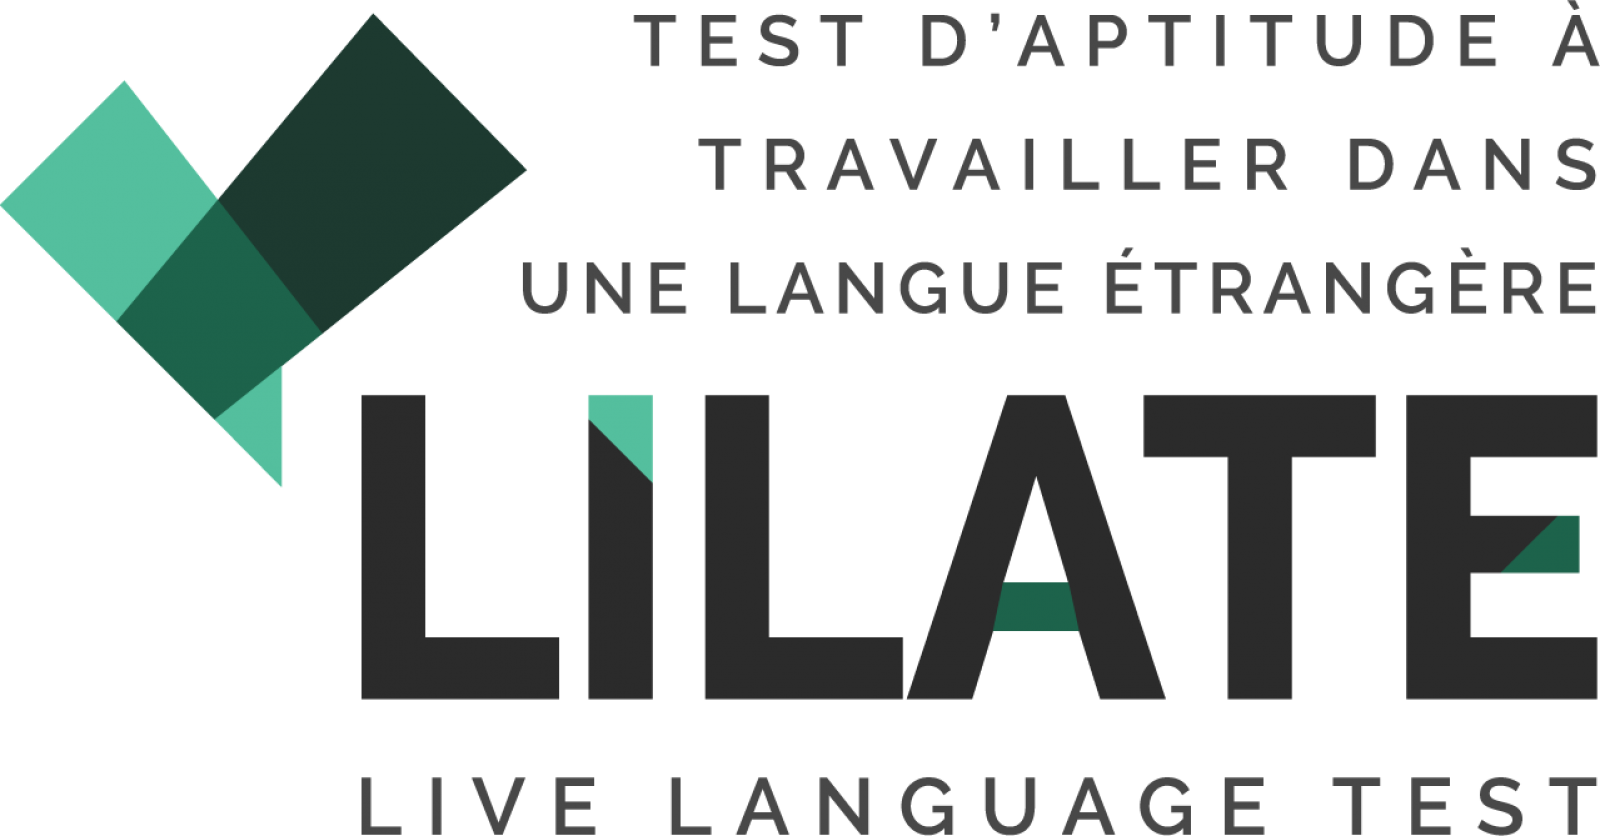 Passez le LILATE test d'aptitude à travailler en espagnol à Aix-en-Provence